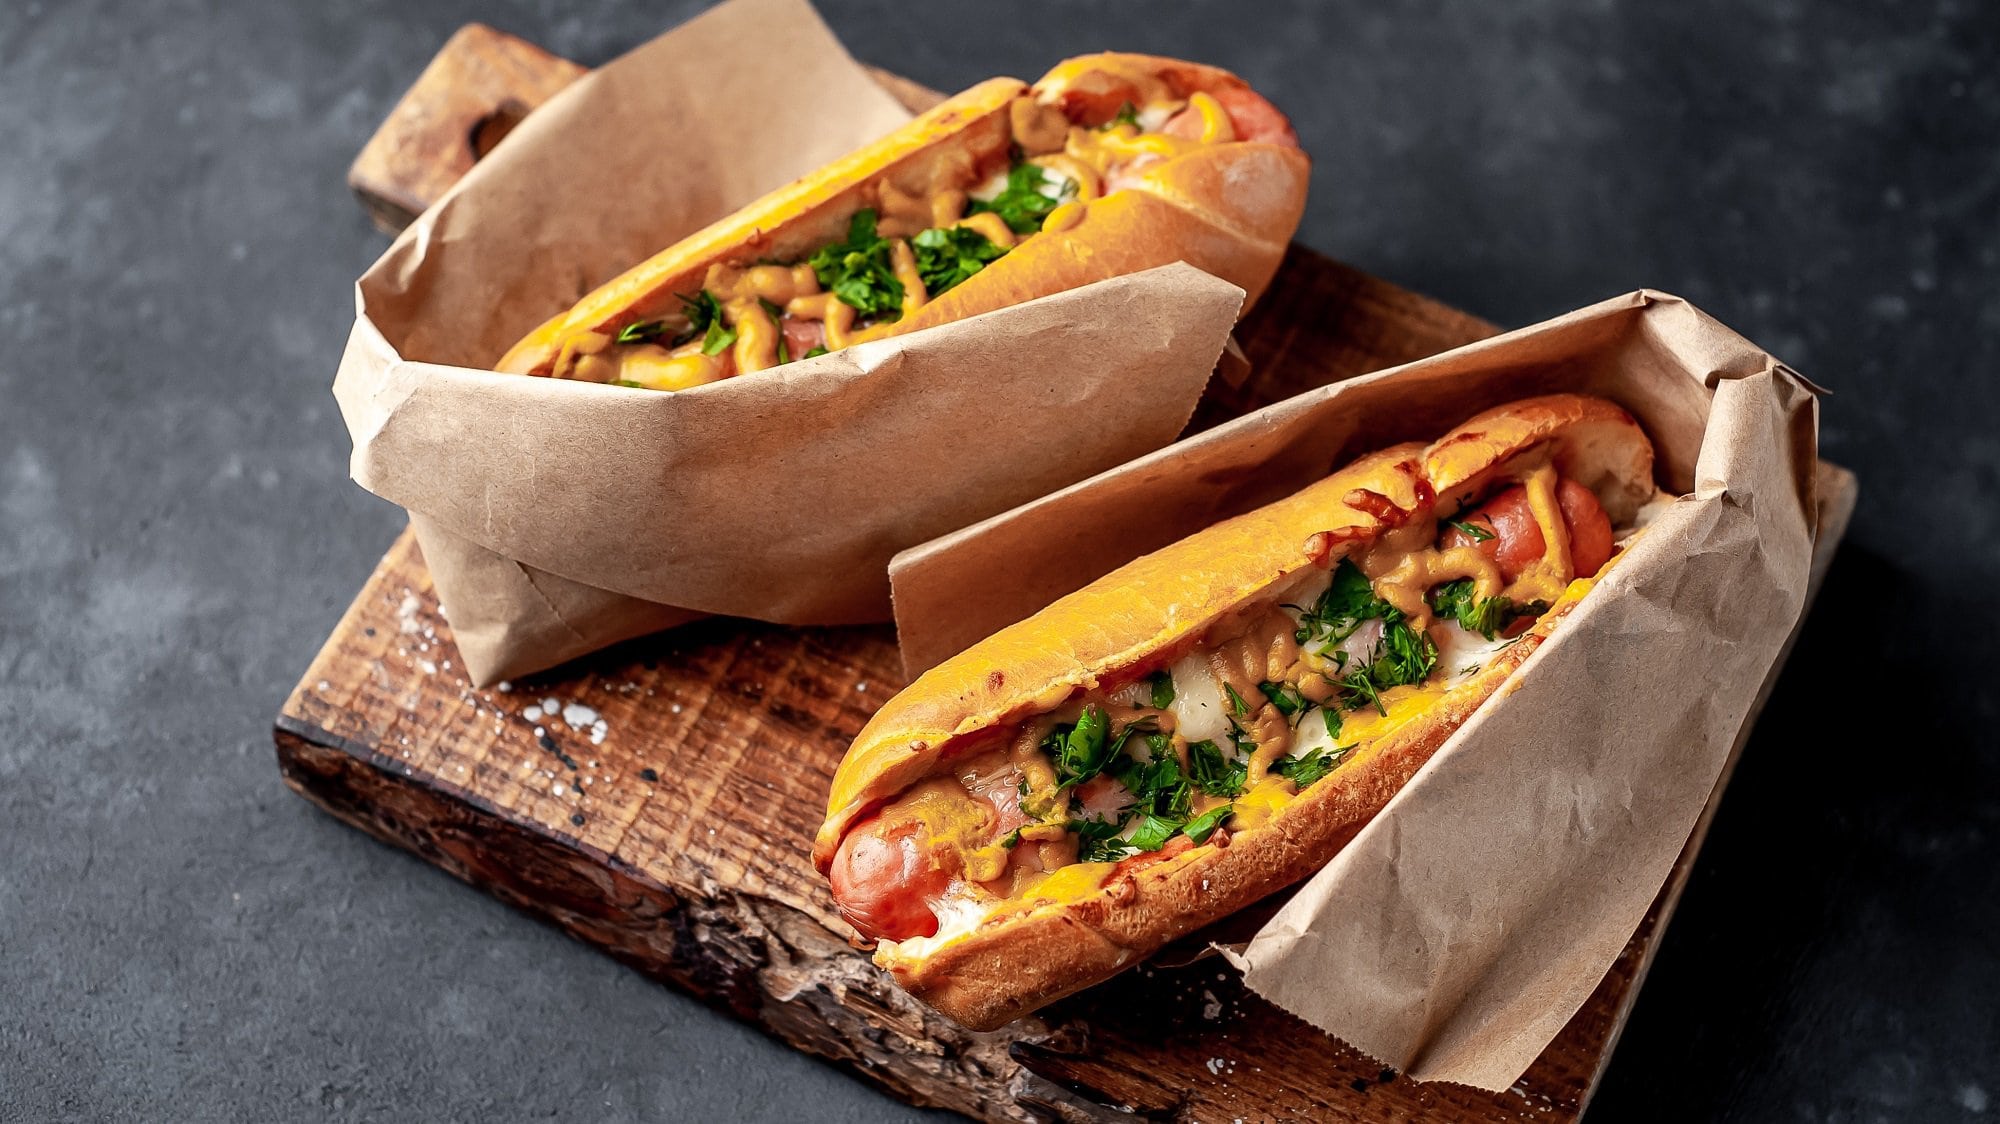 Zwei Hot Dogs mit selbst gemachter Hot-Dog-Sauce, Käse und Petersilie, eingewickelt in Papier, auf einem Holzbrett.